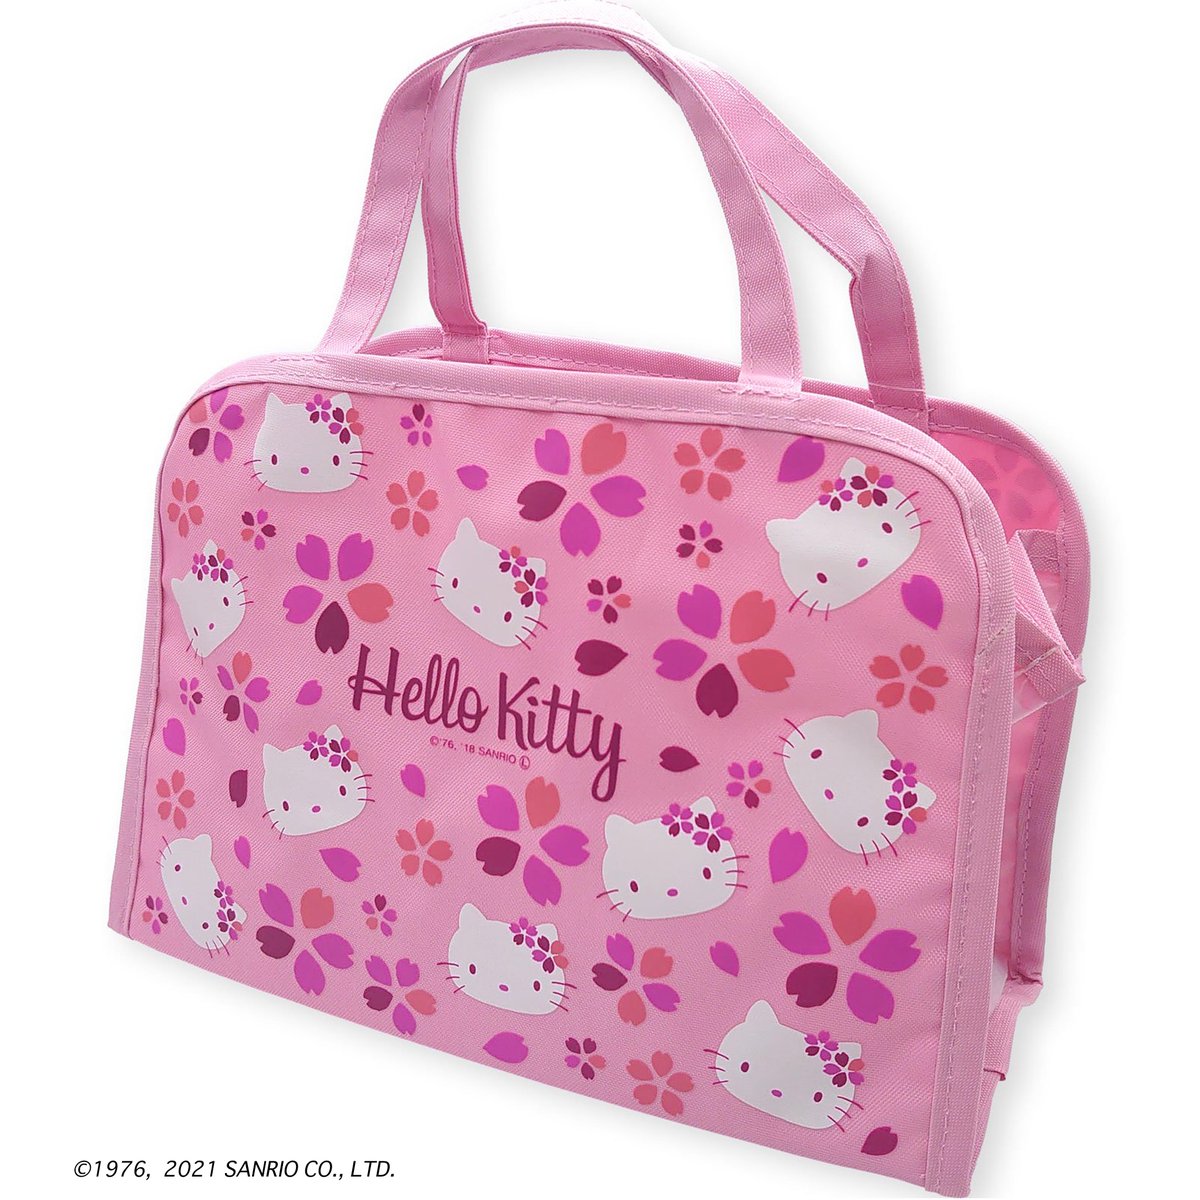 「ハローキティ 温泉バッグ・桜柄可愛いピンク地に桜とキティがちりばめられたデザイン」|ご当地キティのイラスト